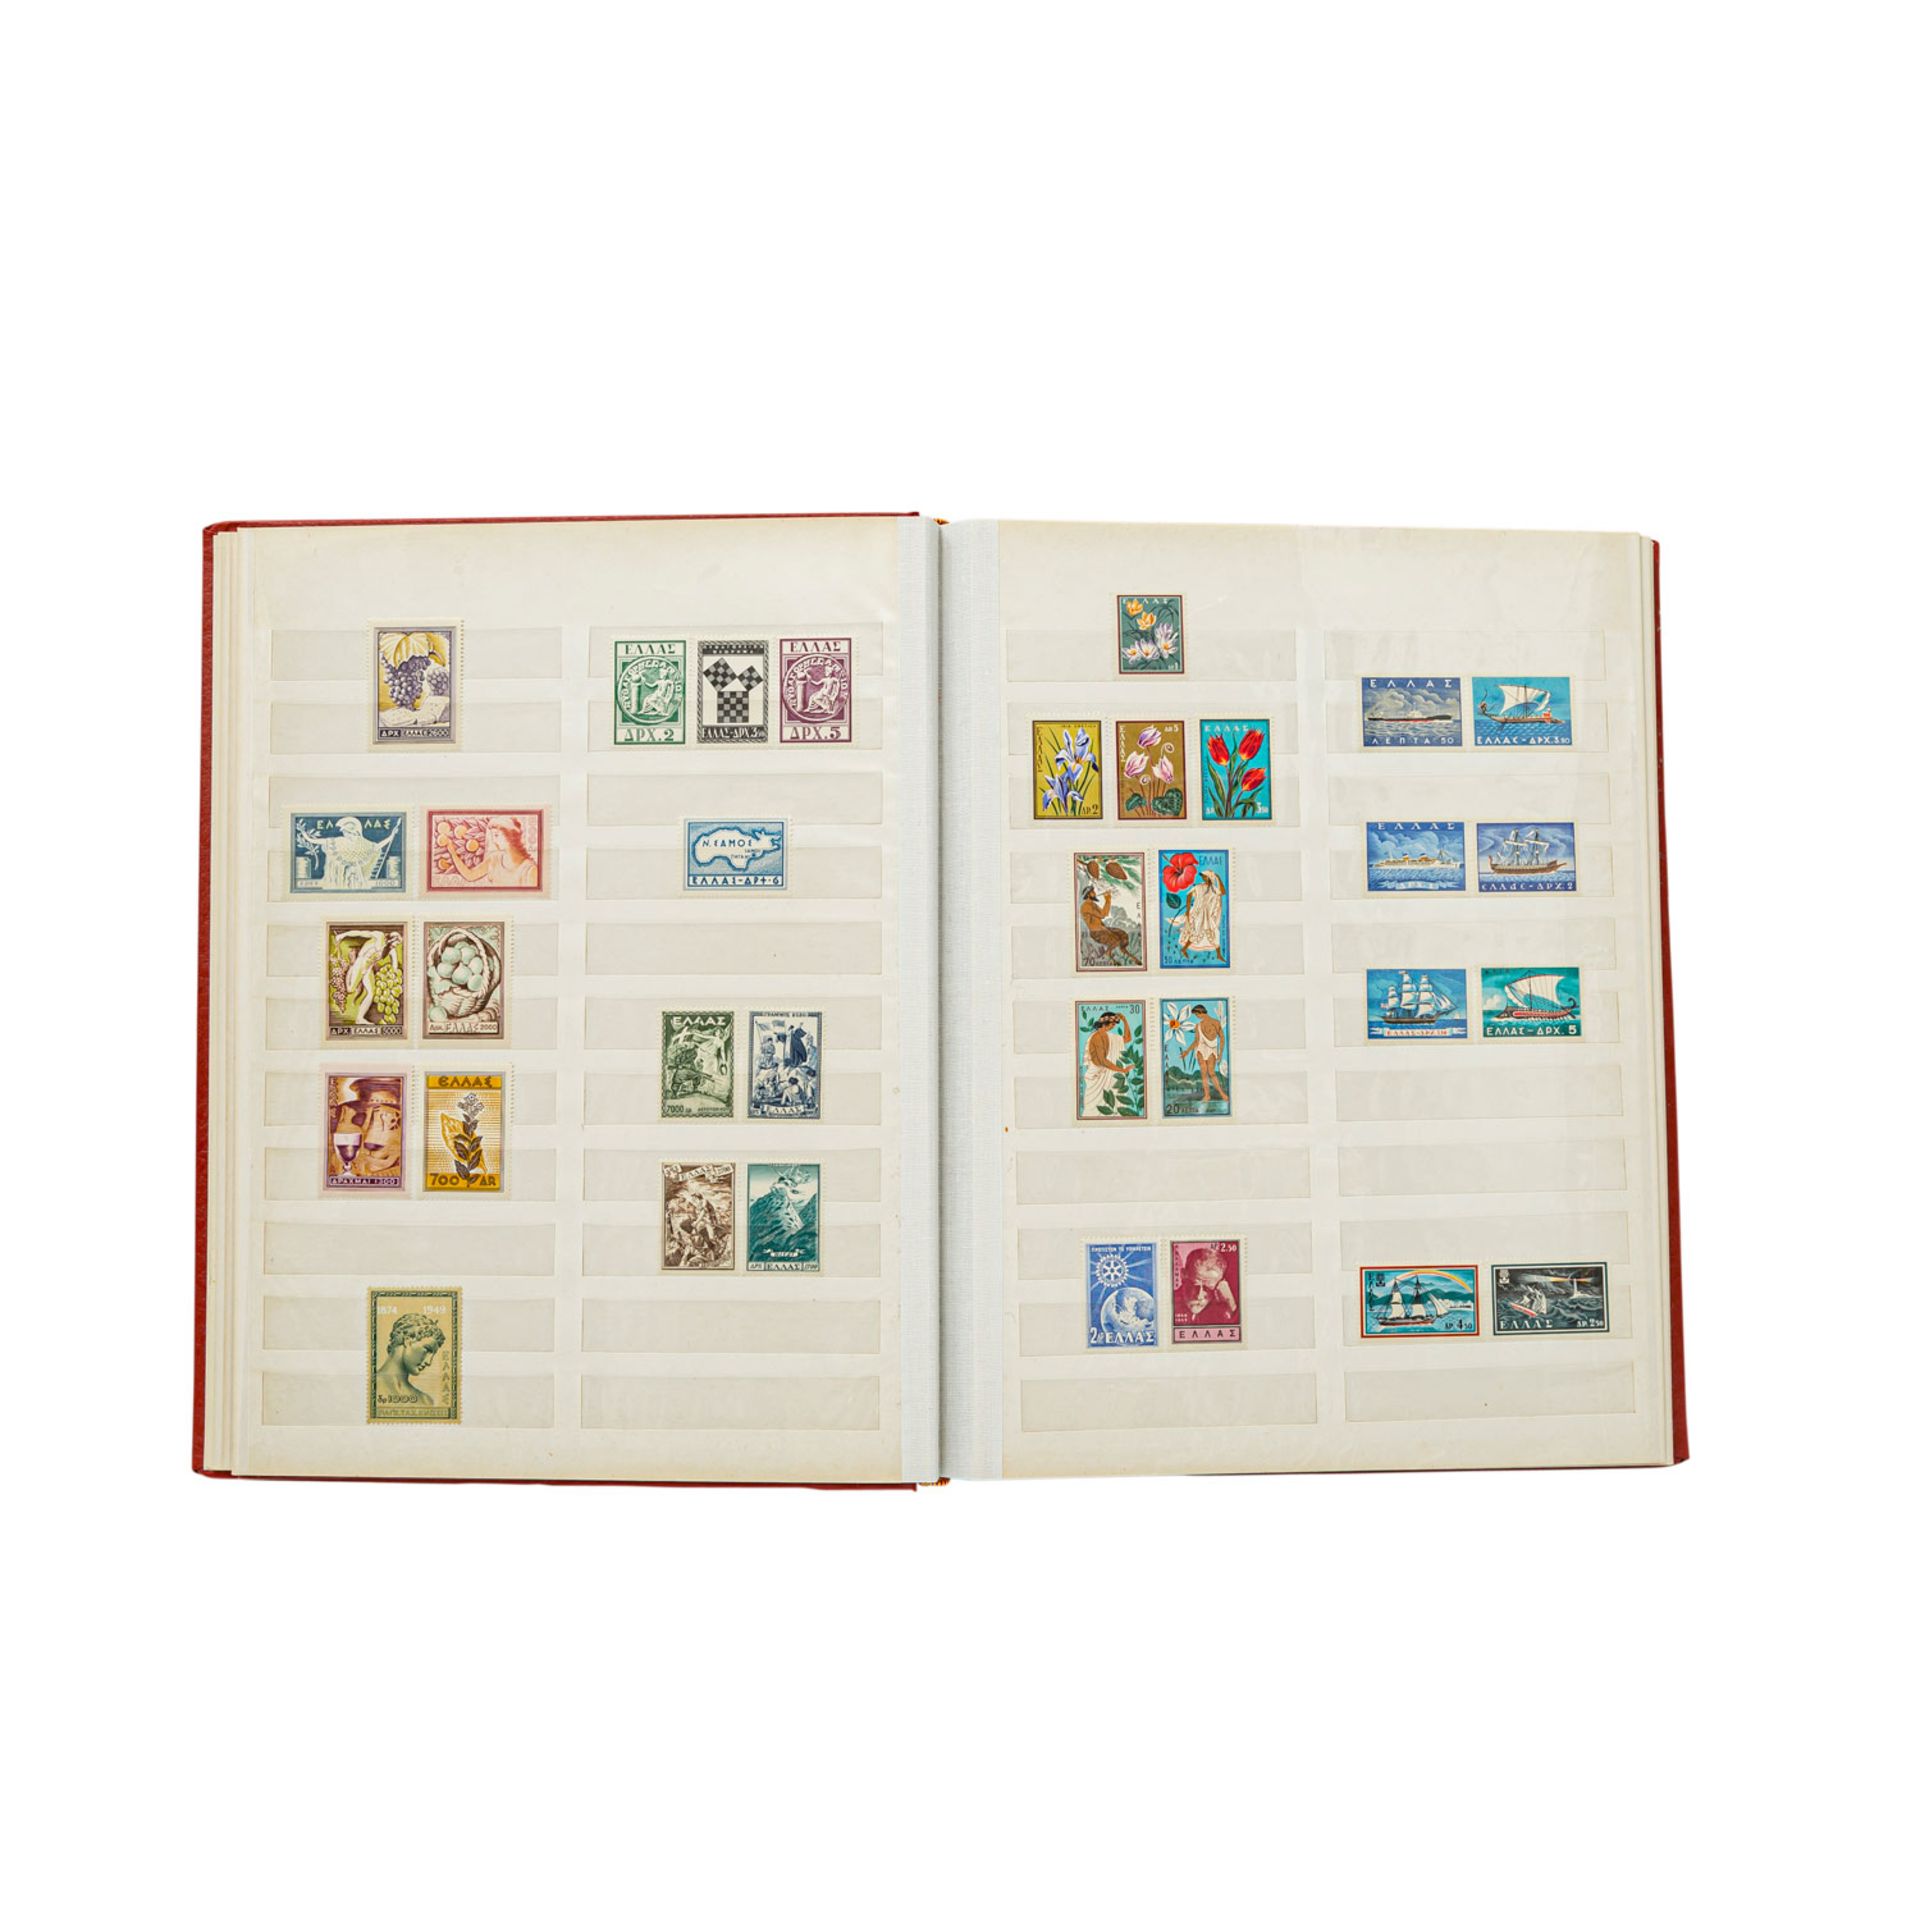 Griechenland - Postfrische Sammlung,ex 1940/1976.Greek, mnh collection ex.1940/76.- - -27.00 %